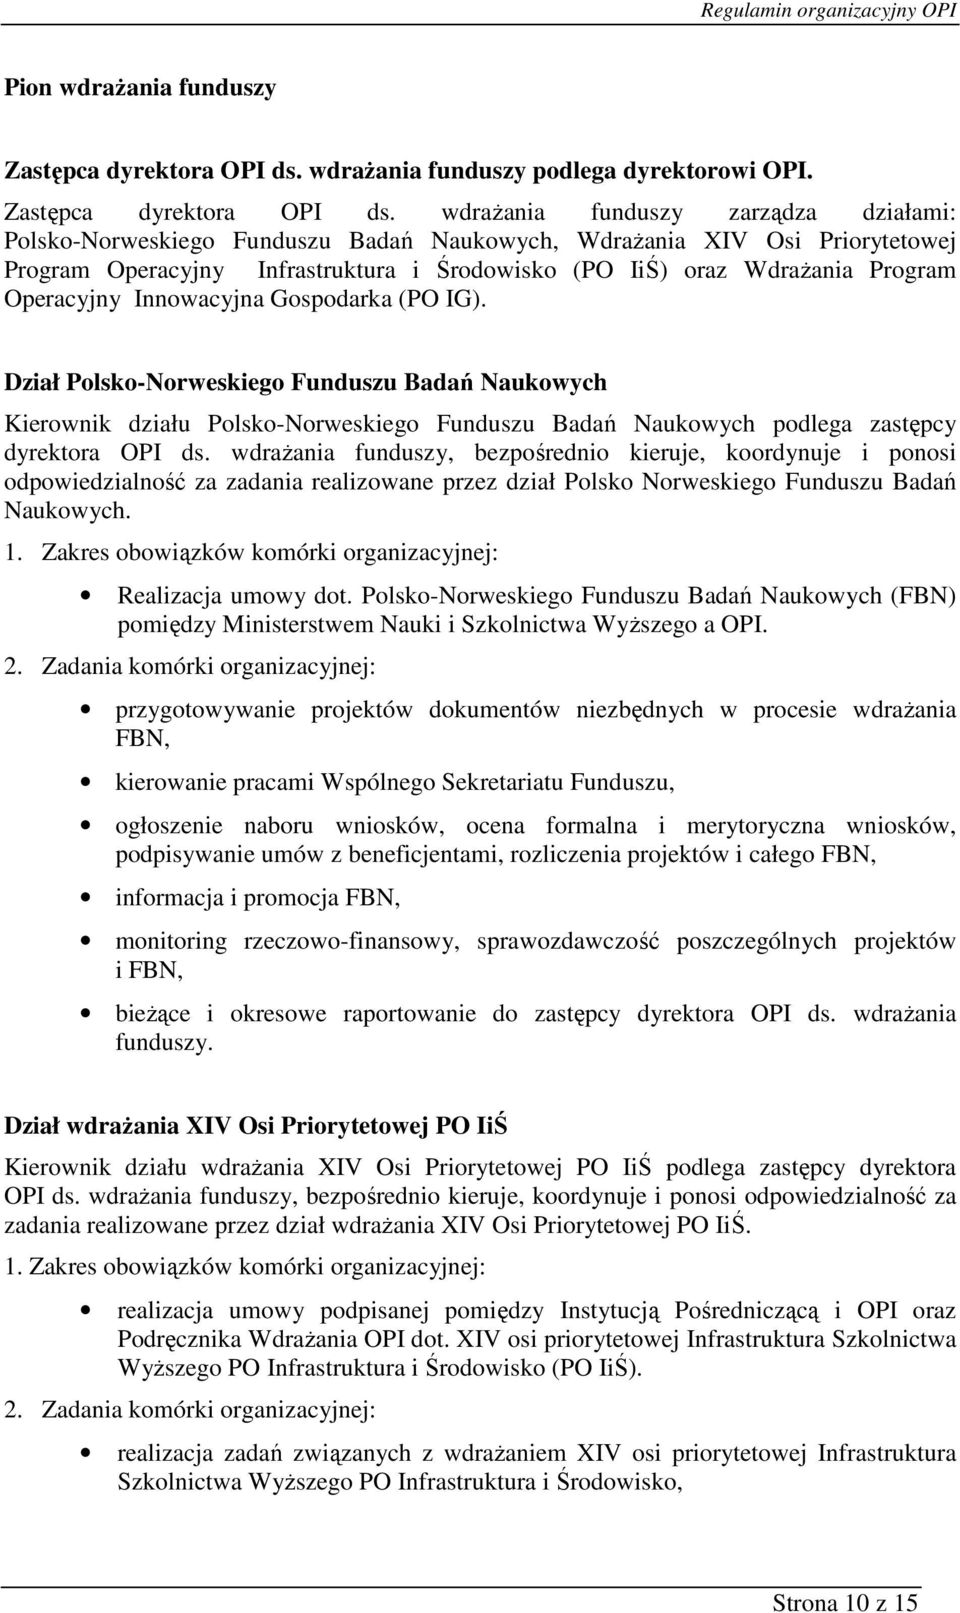 wdraŝania funduszy zarządza działami: Polsko-Norweskiego Funduszu Badań Naukowych, WdraŜania XIV Osi Priorytetowej Program Operacyjny Infrastruktura i Środowisko (PO IiŚ) oraz WdraŜania Program